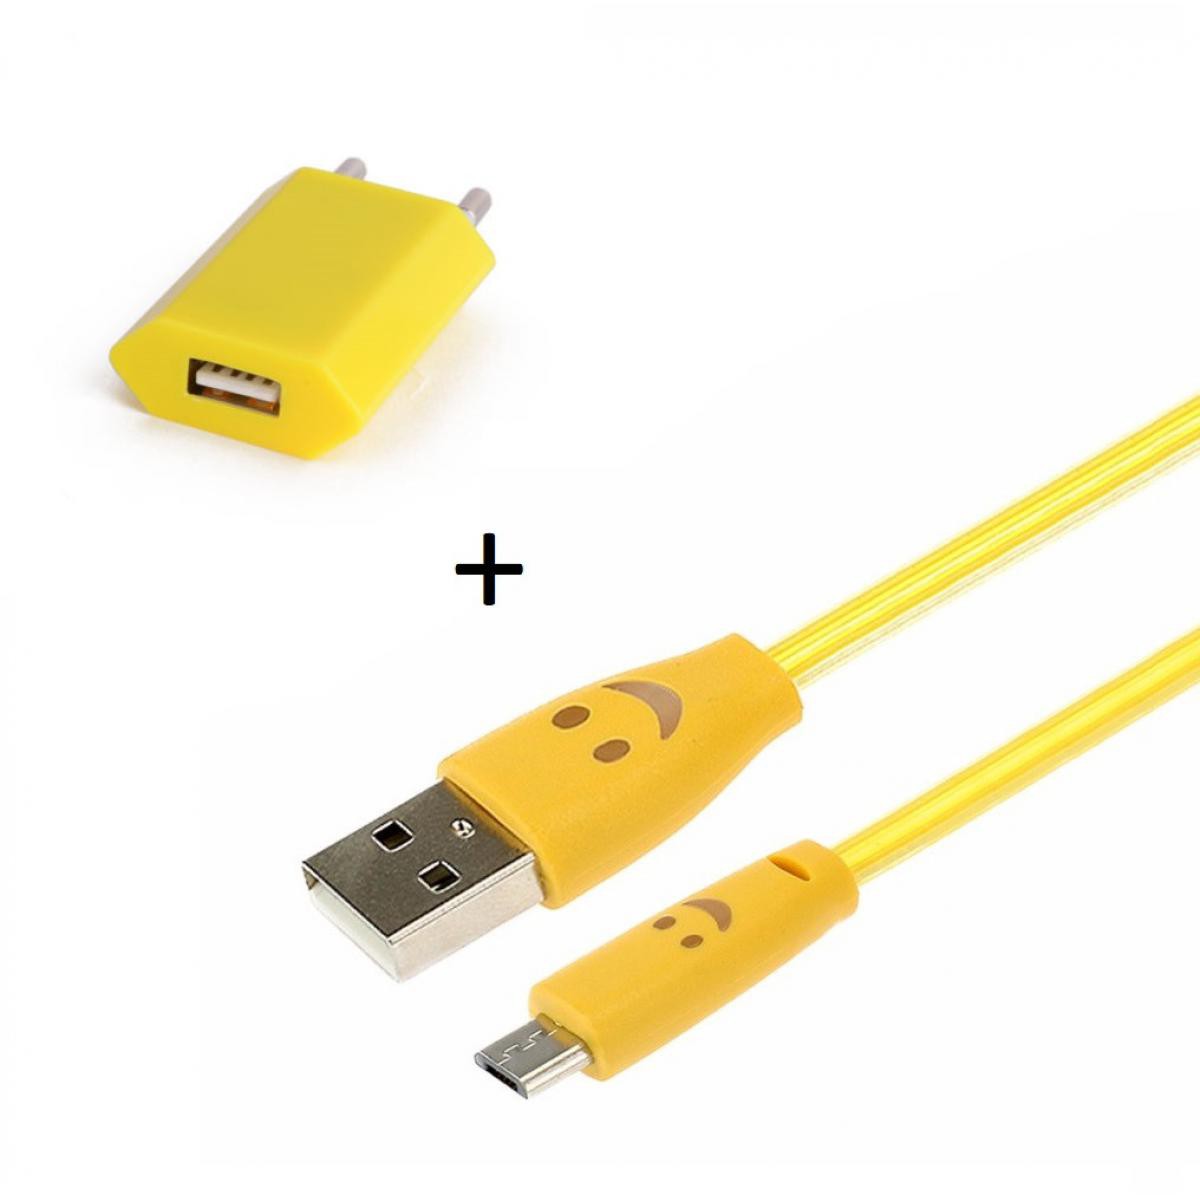 Shot - Pack Chargeur pour WIKO View 3 Lite Smartphone Micro USB (Cable Smiley LED + Prise Secteur USB) Android (JAUNE) - Chargeur secteur téléphone